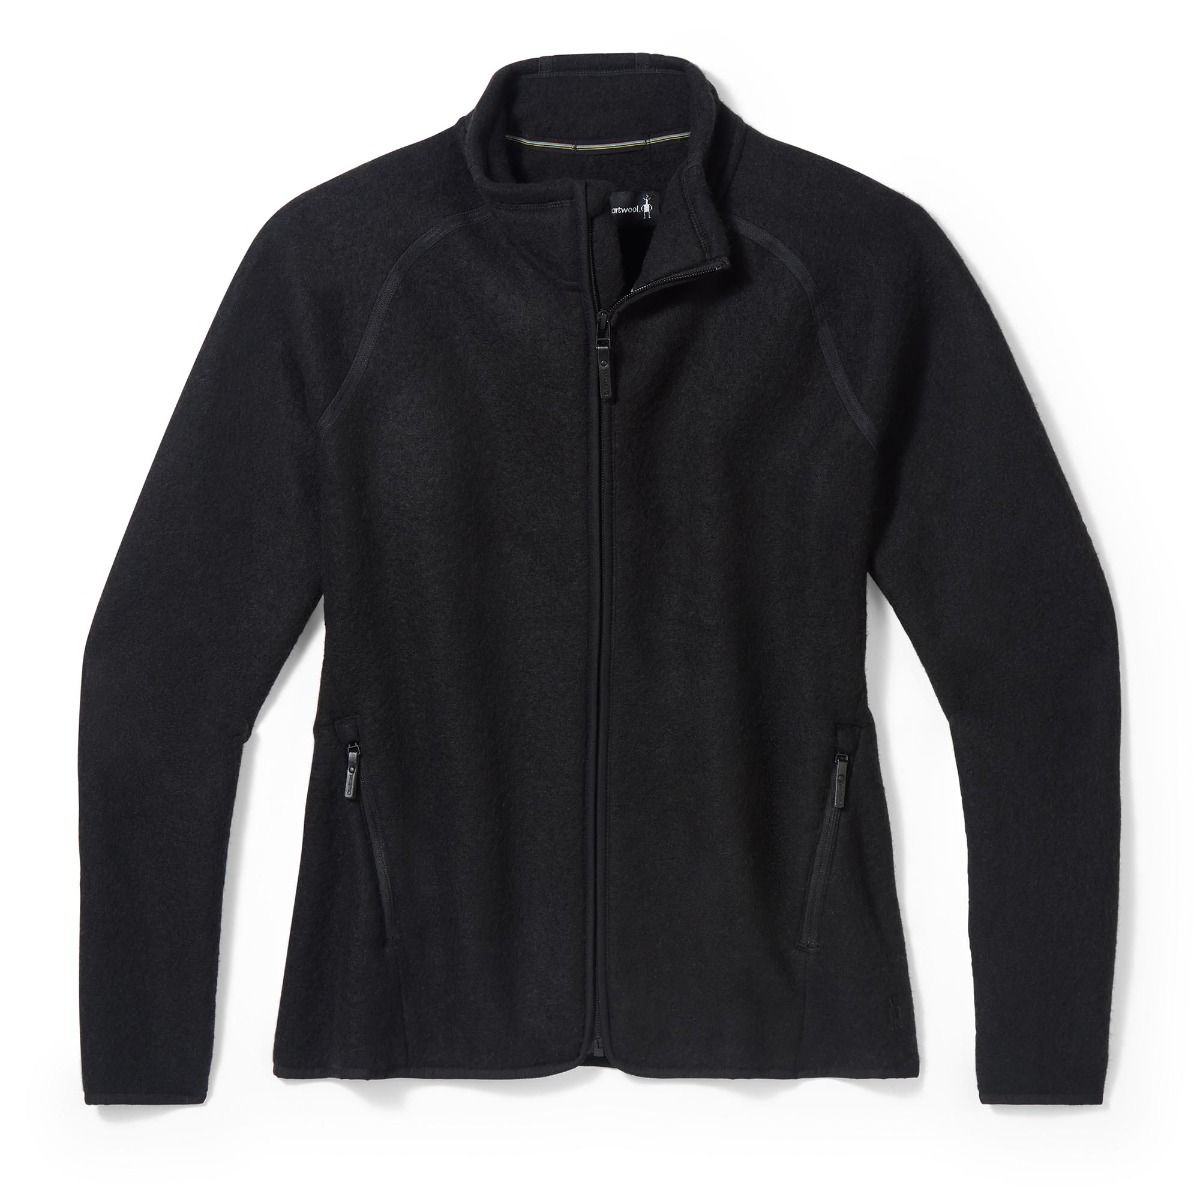 Smartwool Hudson Trail Fleece Full Zip Jacket - Fleece jacket